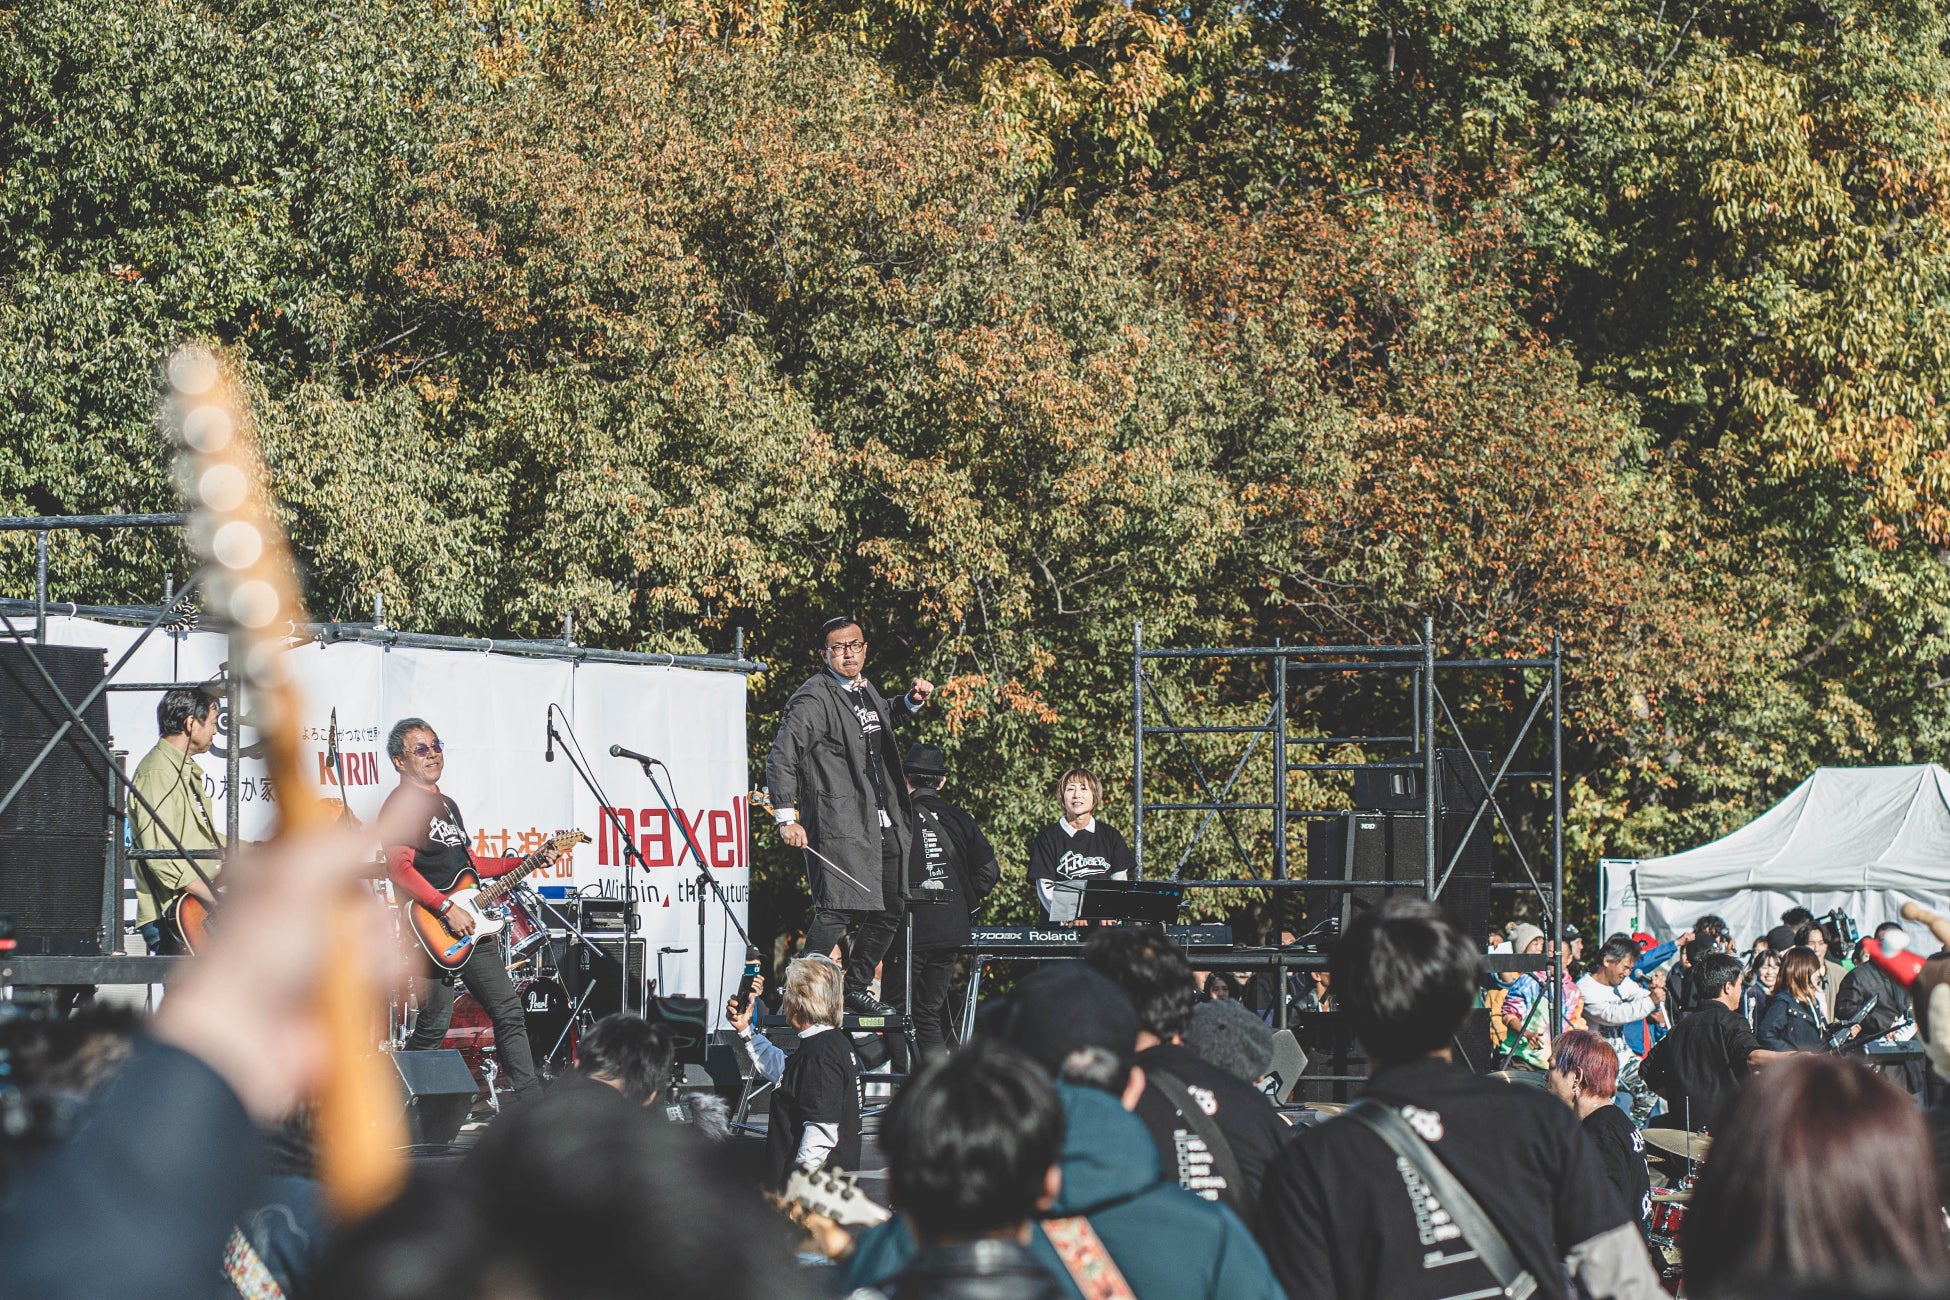 『千のRockYou!!』 1000人募集したバンドメンバーによる同時演奏イベントで演奏者と観客が一体となり大阪が大熱狂！